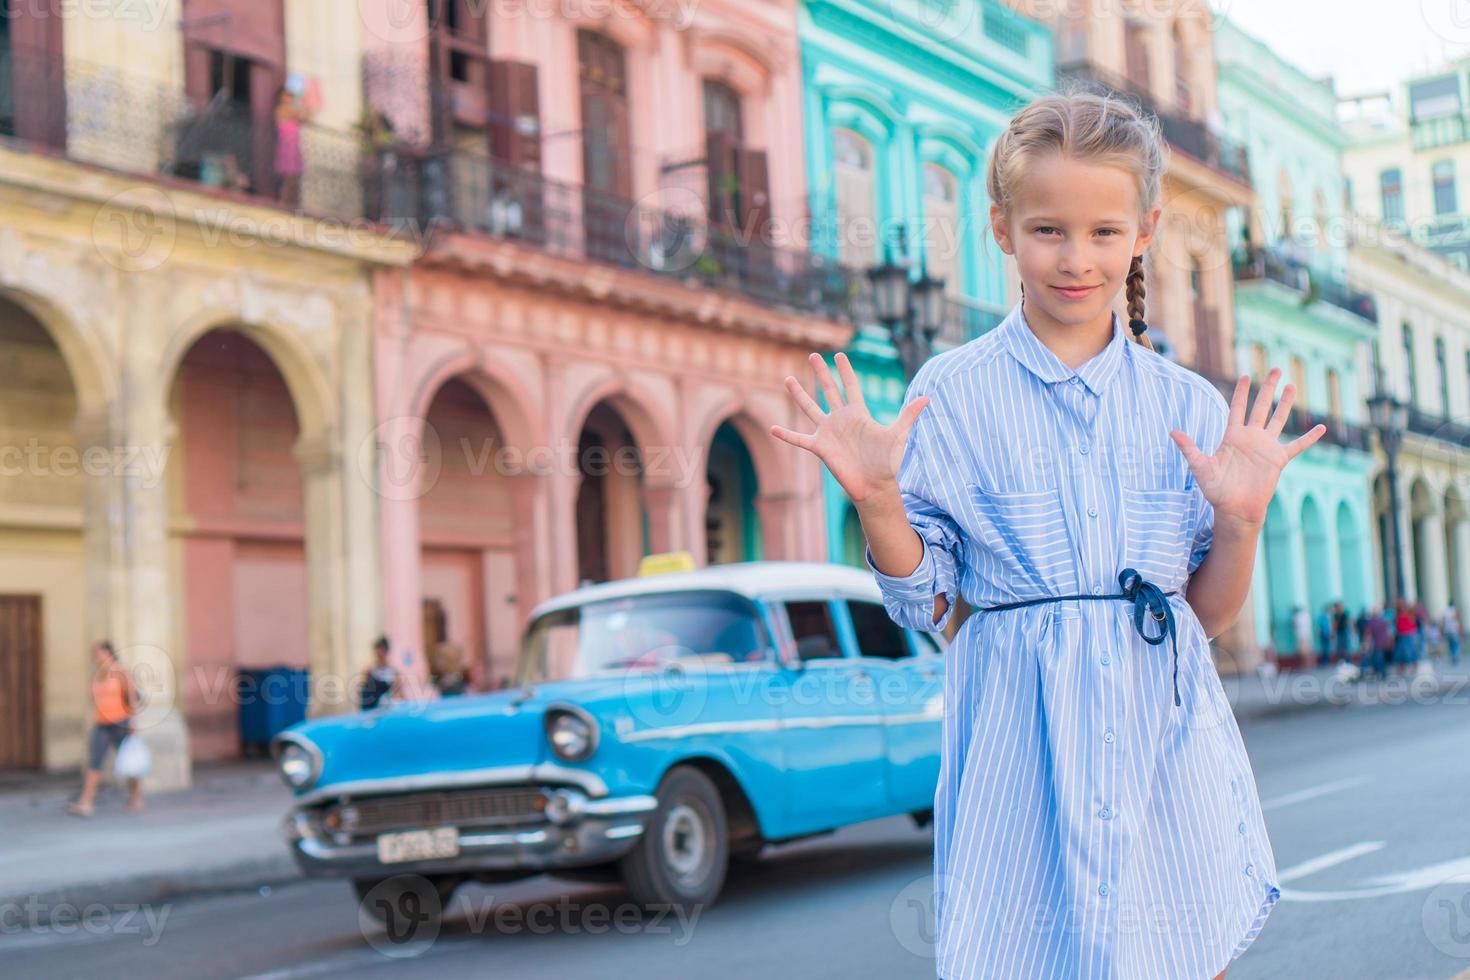 Adorable little girl in popular area in Old Havana, Cuba. Portrait of cutiest kid outdoors on a street of Havana photo